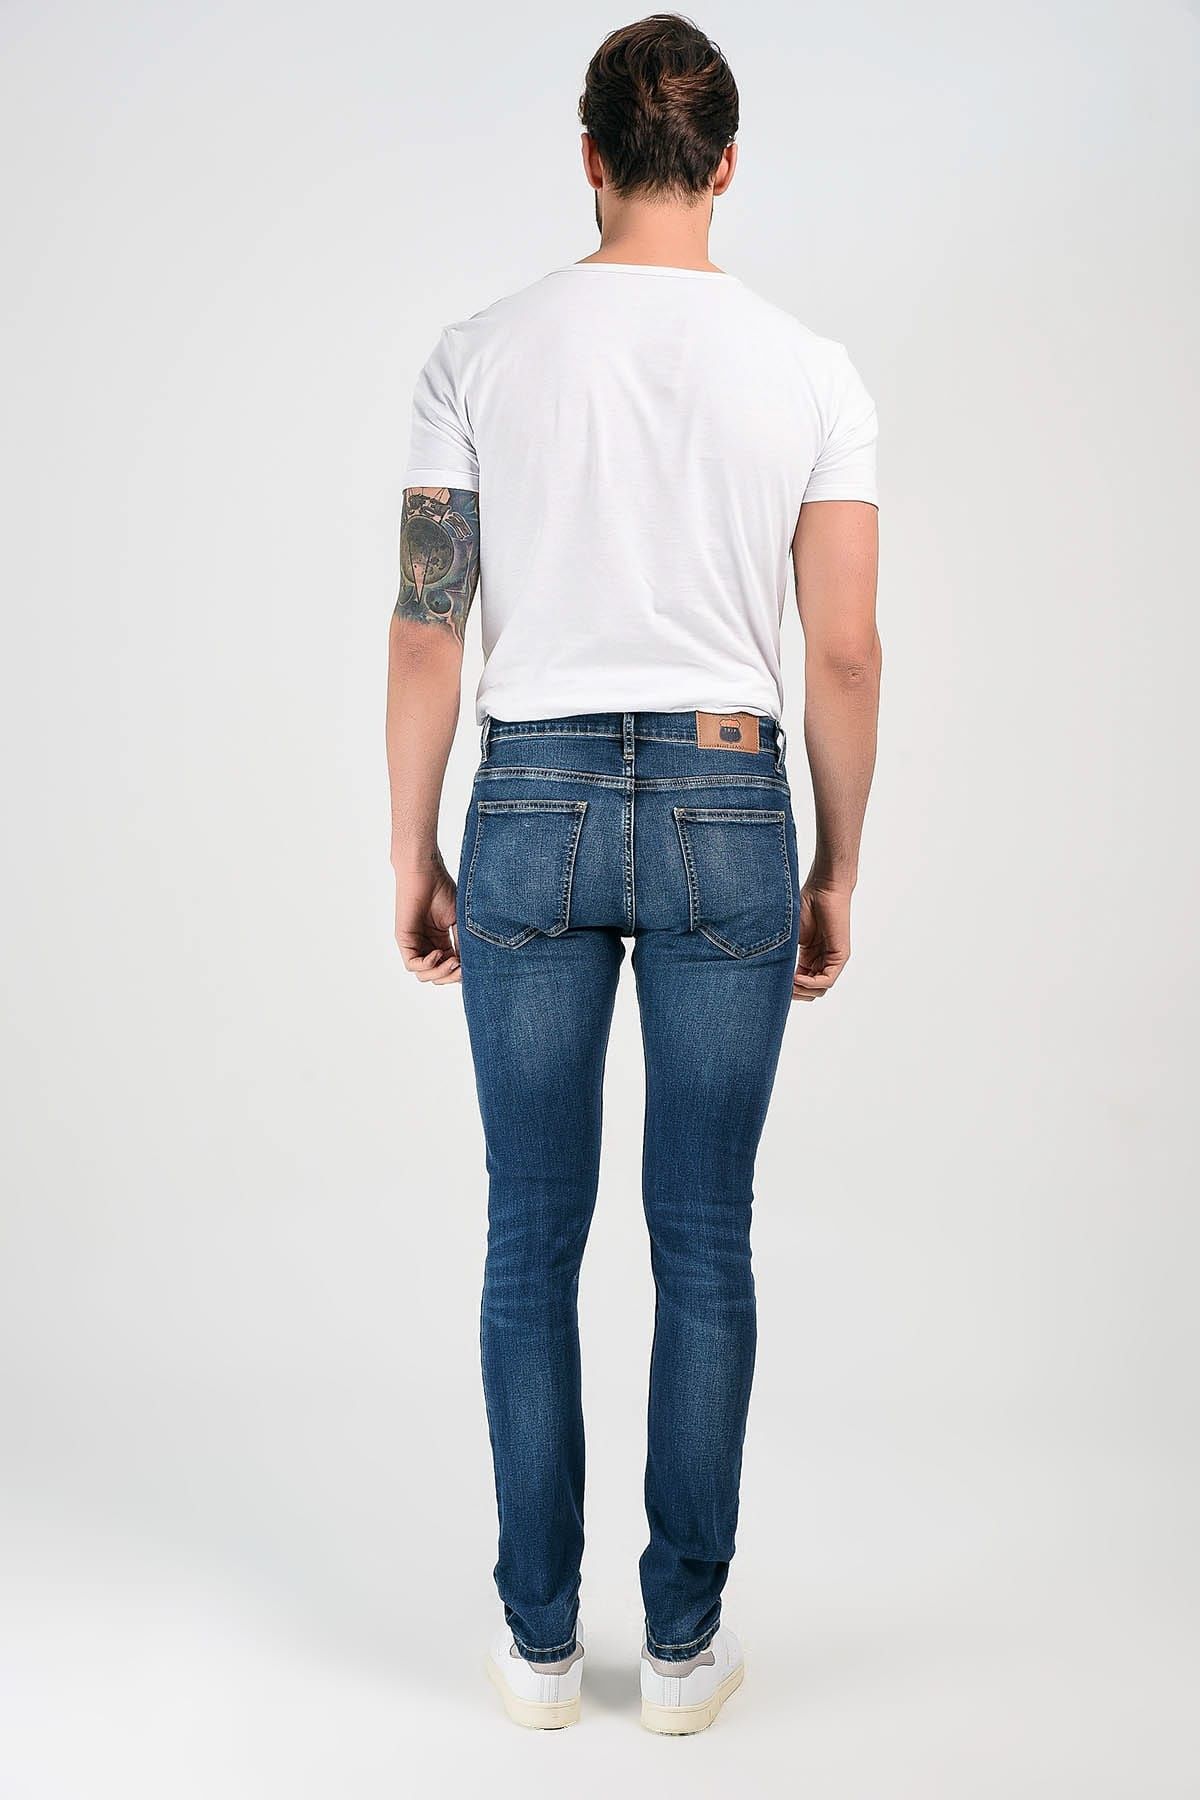 Продаю абсалютно новые рванные джинсы турецкого производство